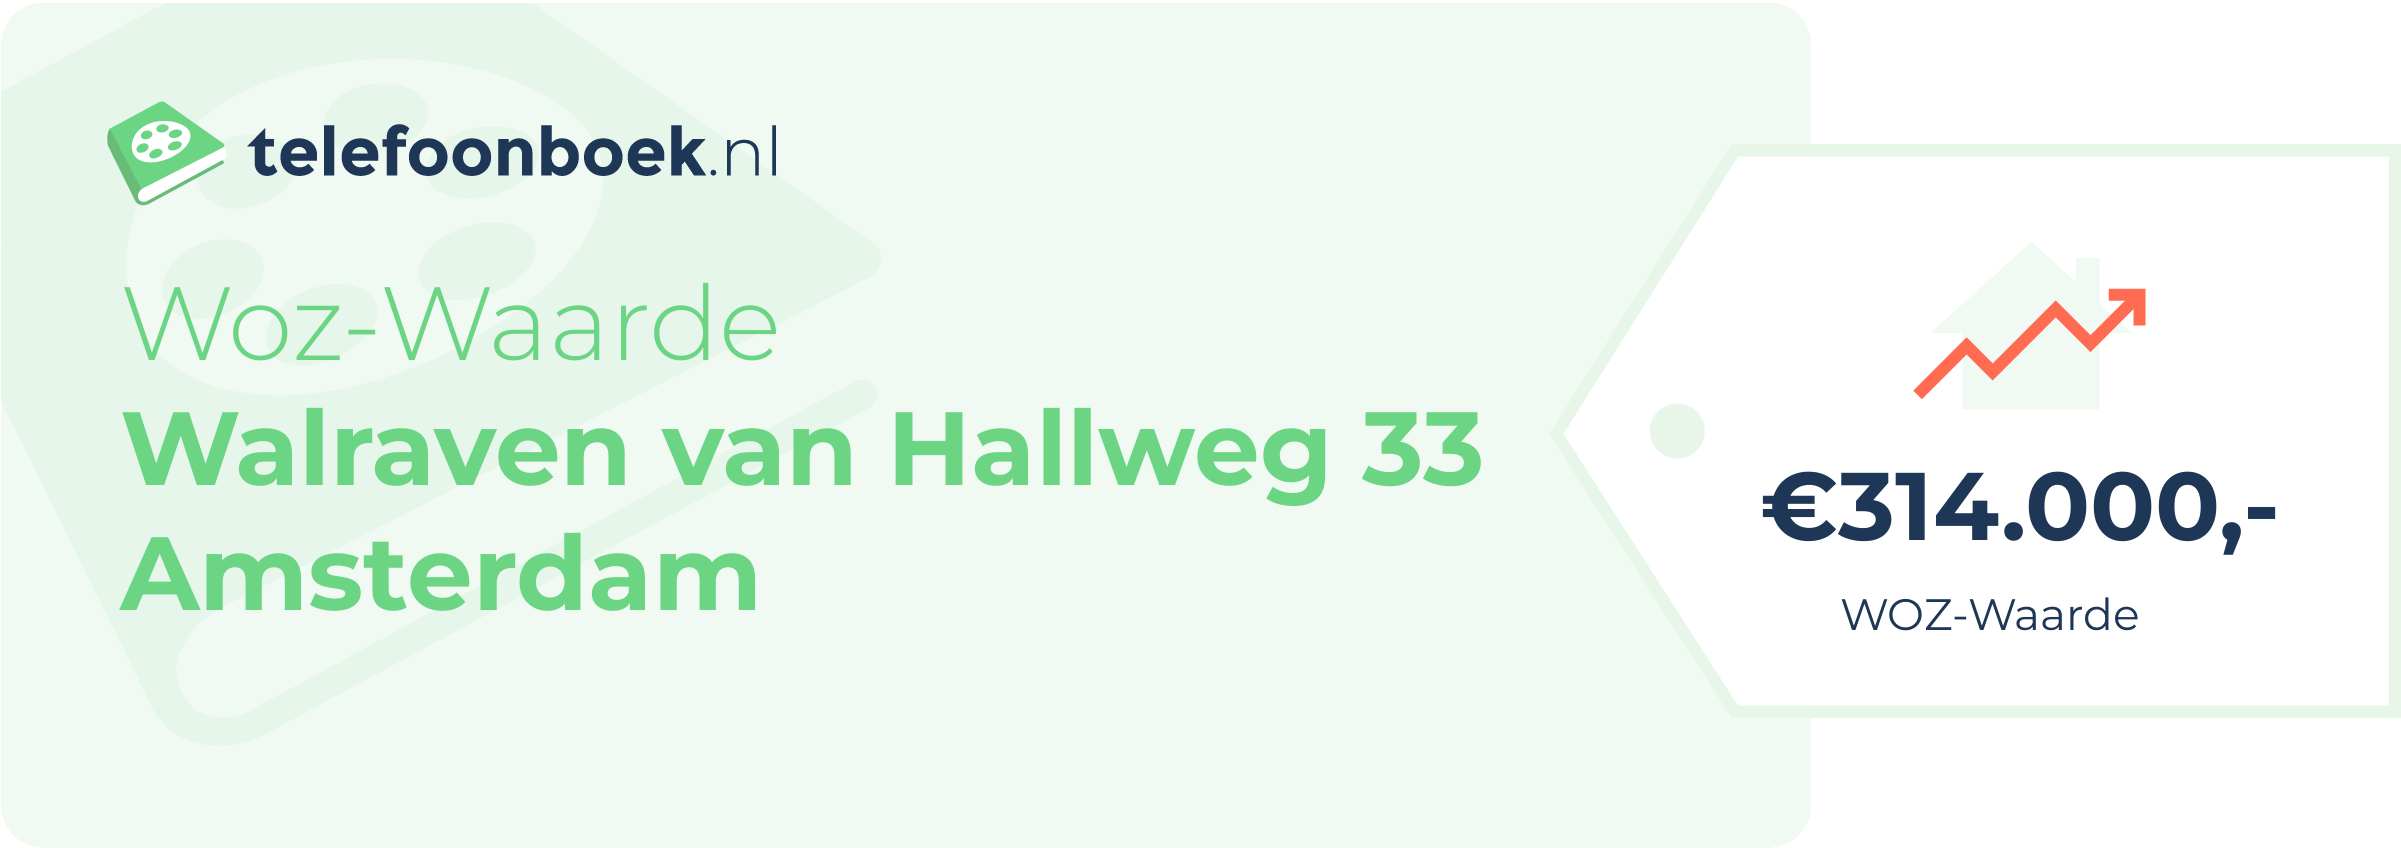 WOZ-waarde Walraven Van Hallweg 33 Amsterdam